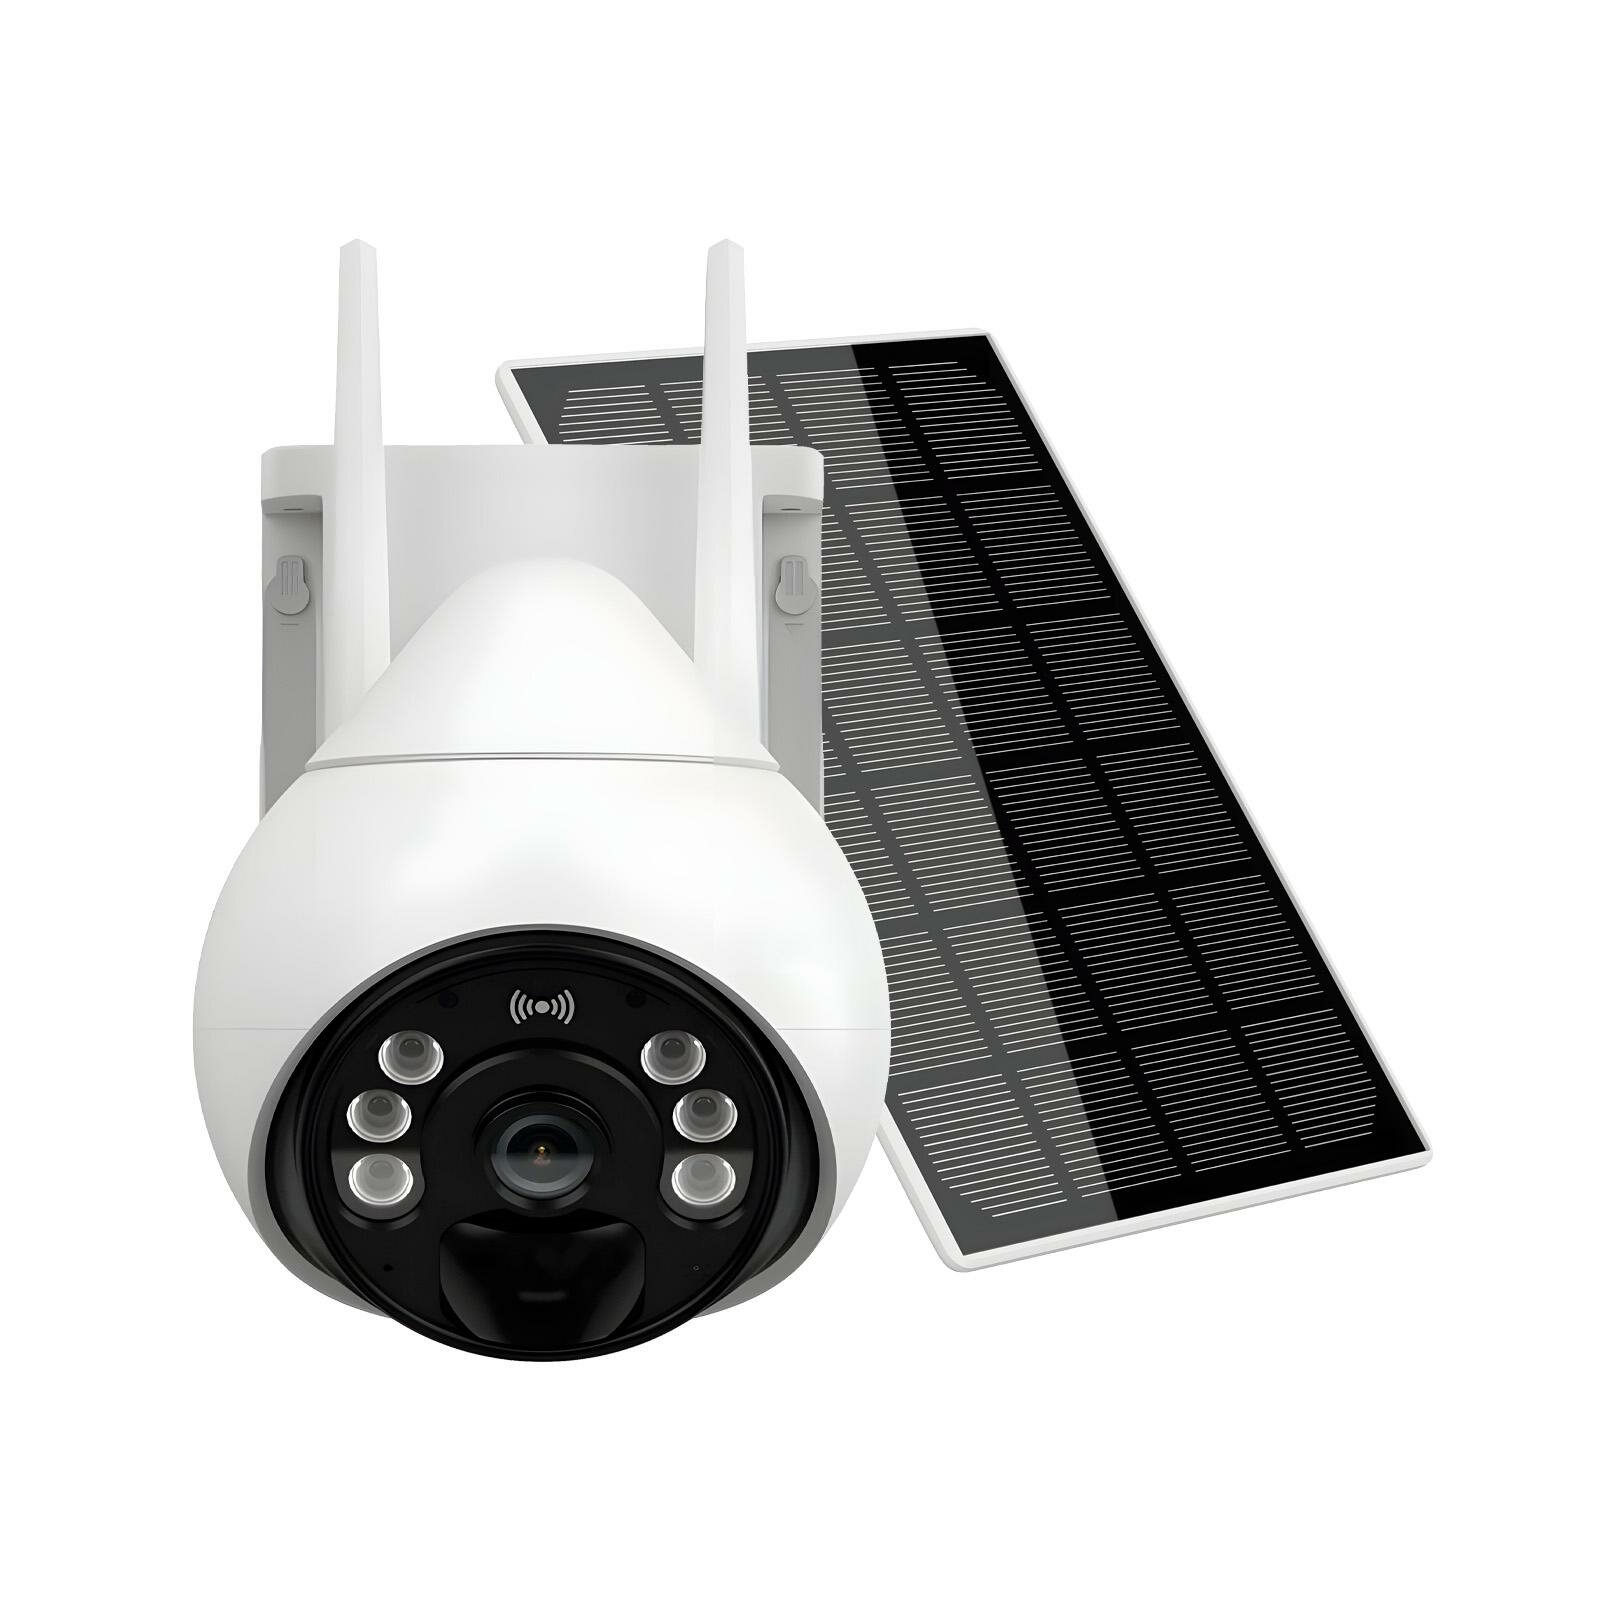 Солнечная PTZ-камера 3MP 4G с солнечной панелью LinkSolar-4G Mod:K69-2MP (N49263UL) мощностью 8Вт и аккумулятором емкостью 10000мАч. Двусторонняя связ